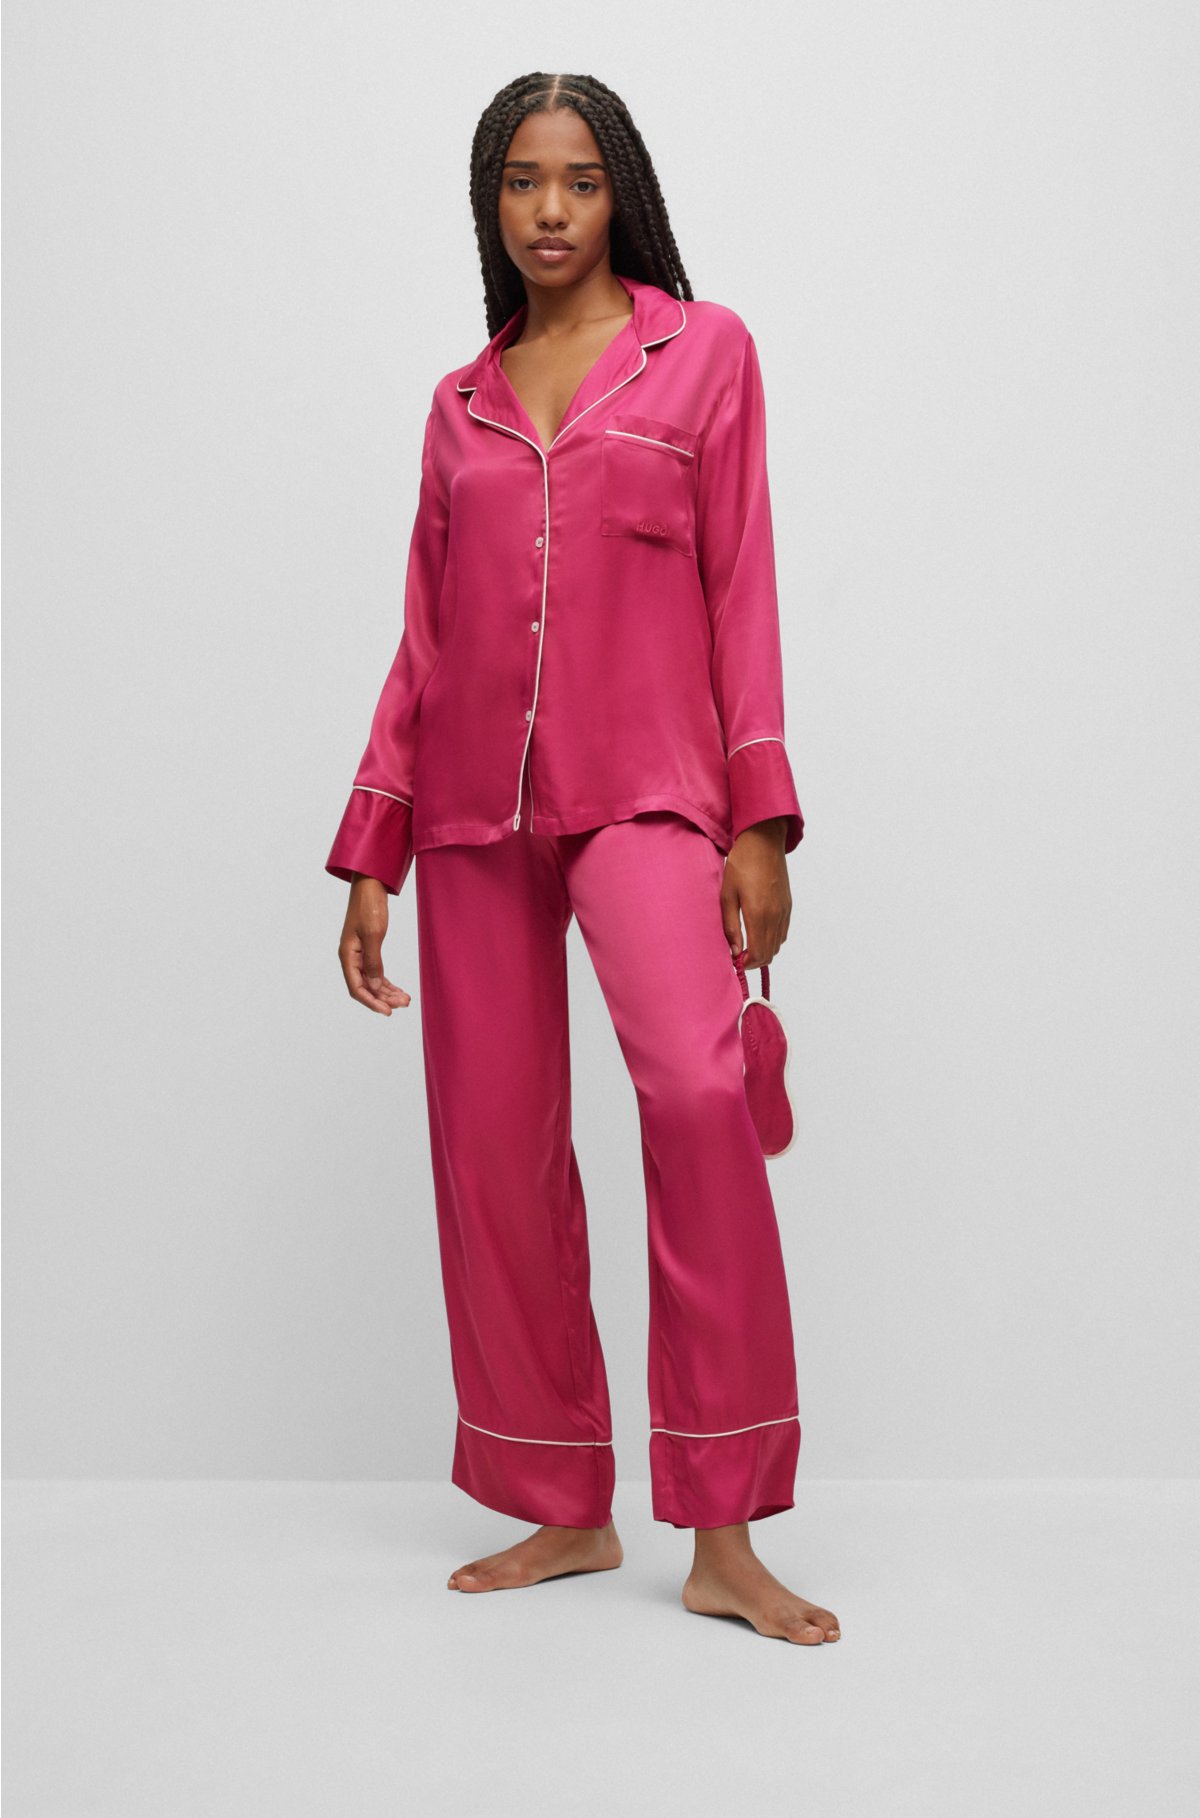 Romantic Nightwear Pajamas Wine Red Silk Satin R80556-3